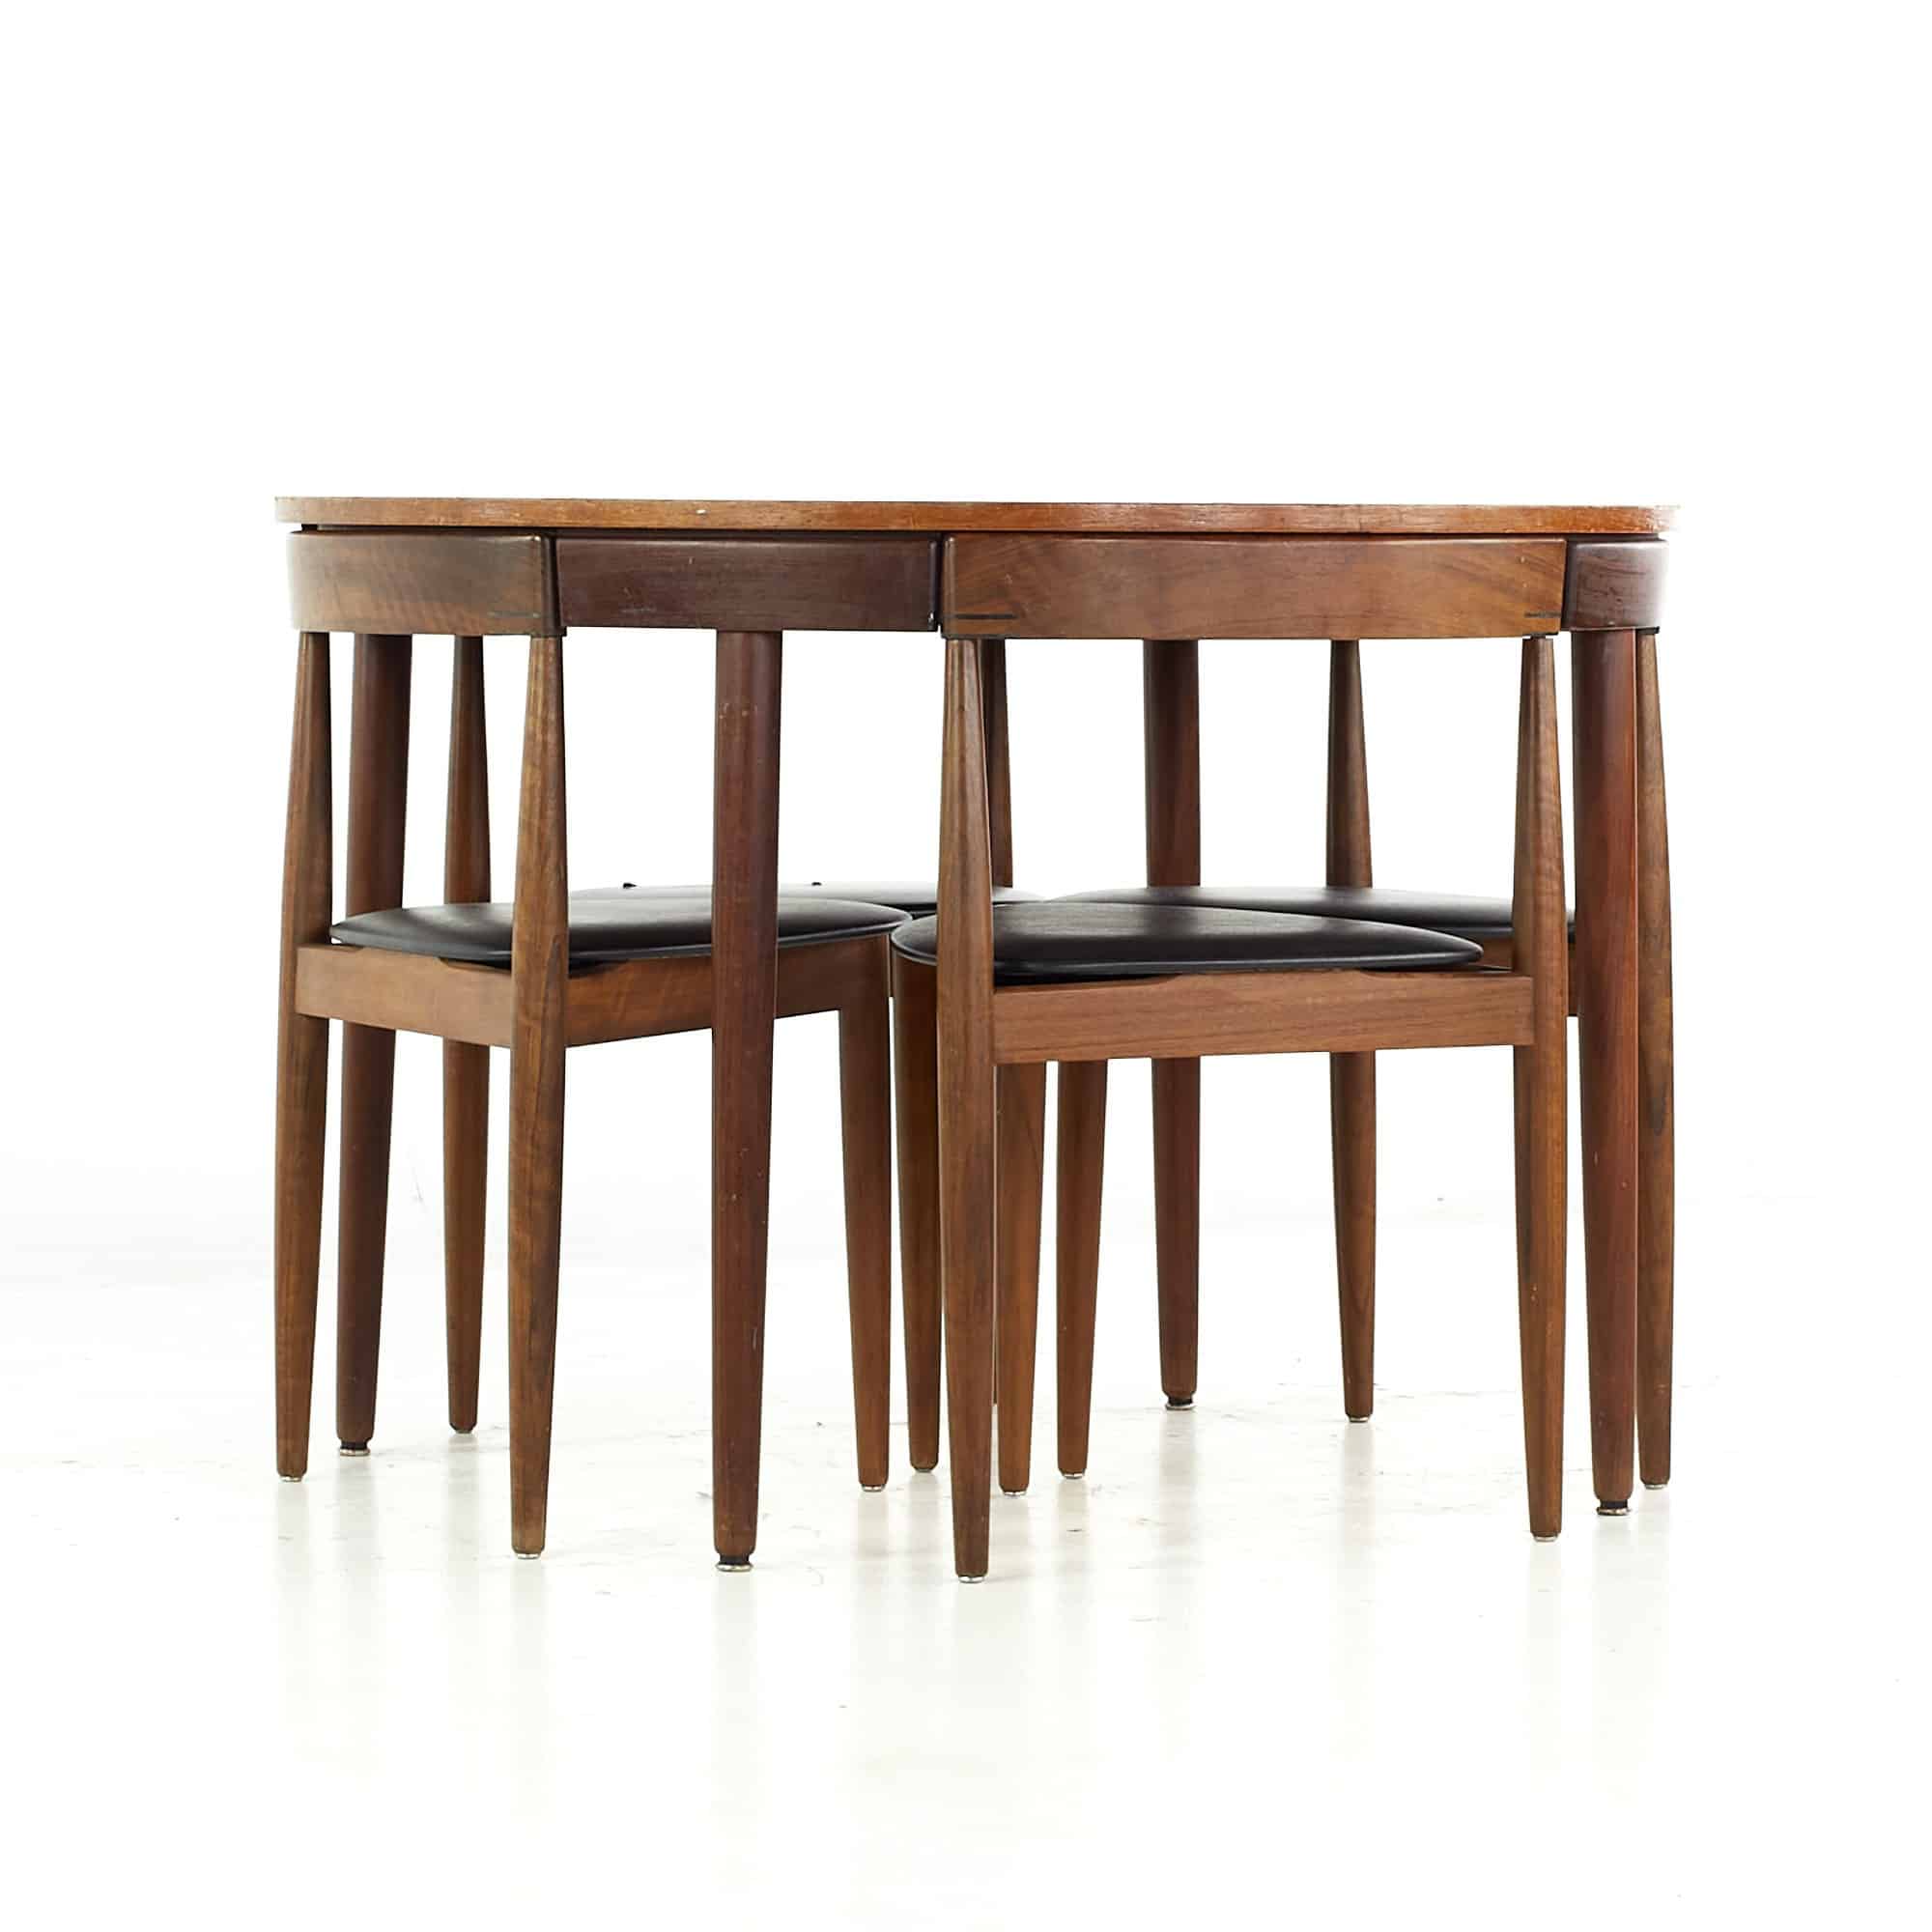 Hans Olsen for Frem Rojle Mid Century Danish Teak Dining Table with Nesting Chairs - Set of 4